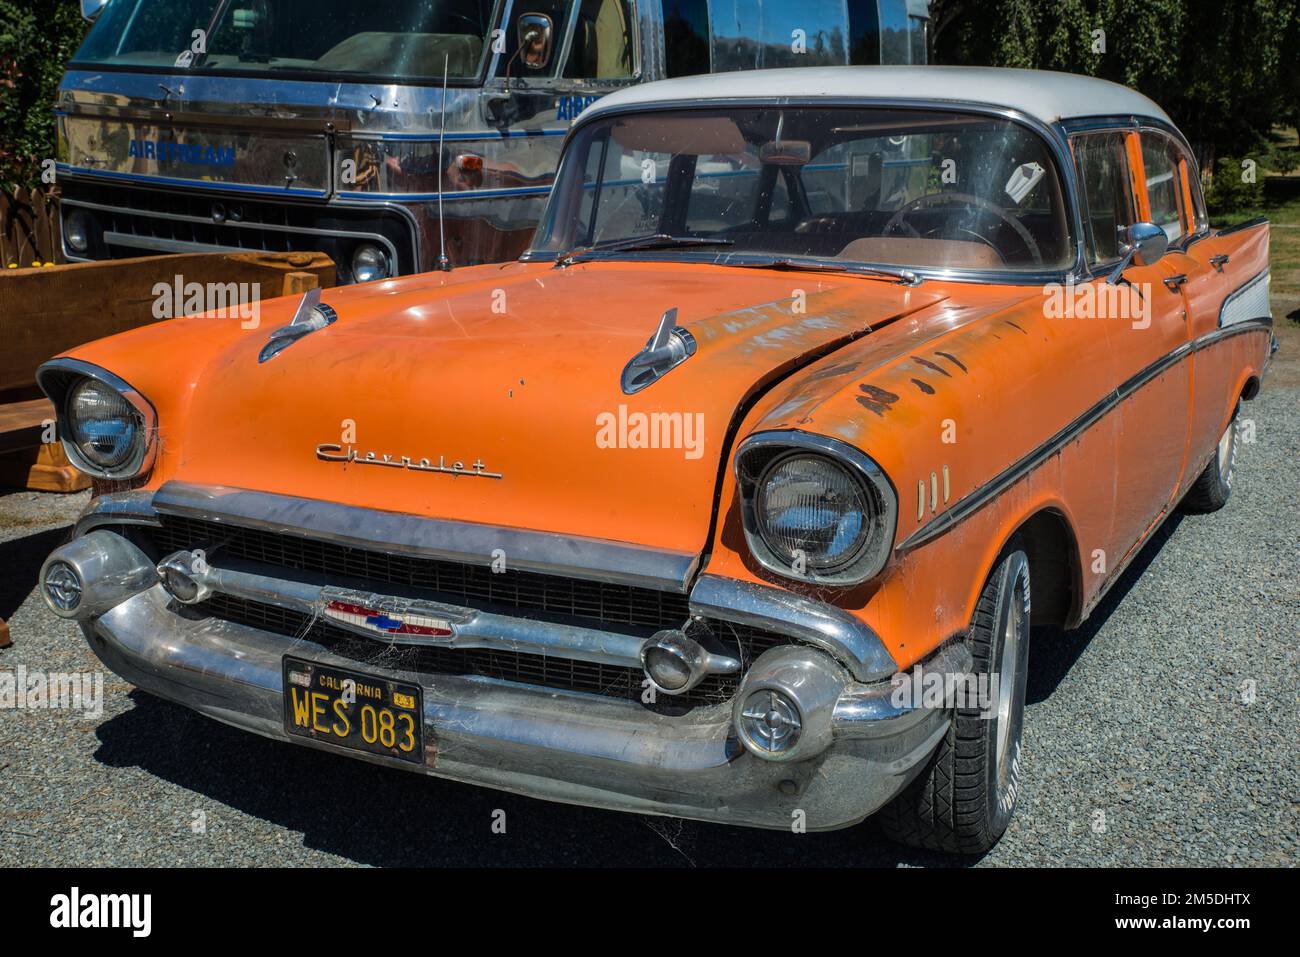 Un bel Air 1956 de Chevrolet rouillé en orange, avec des toiles d'araignée Banque D'Images